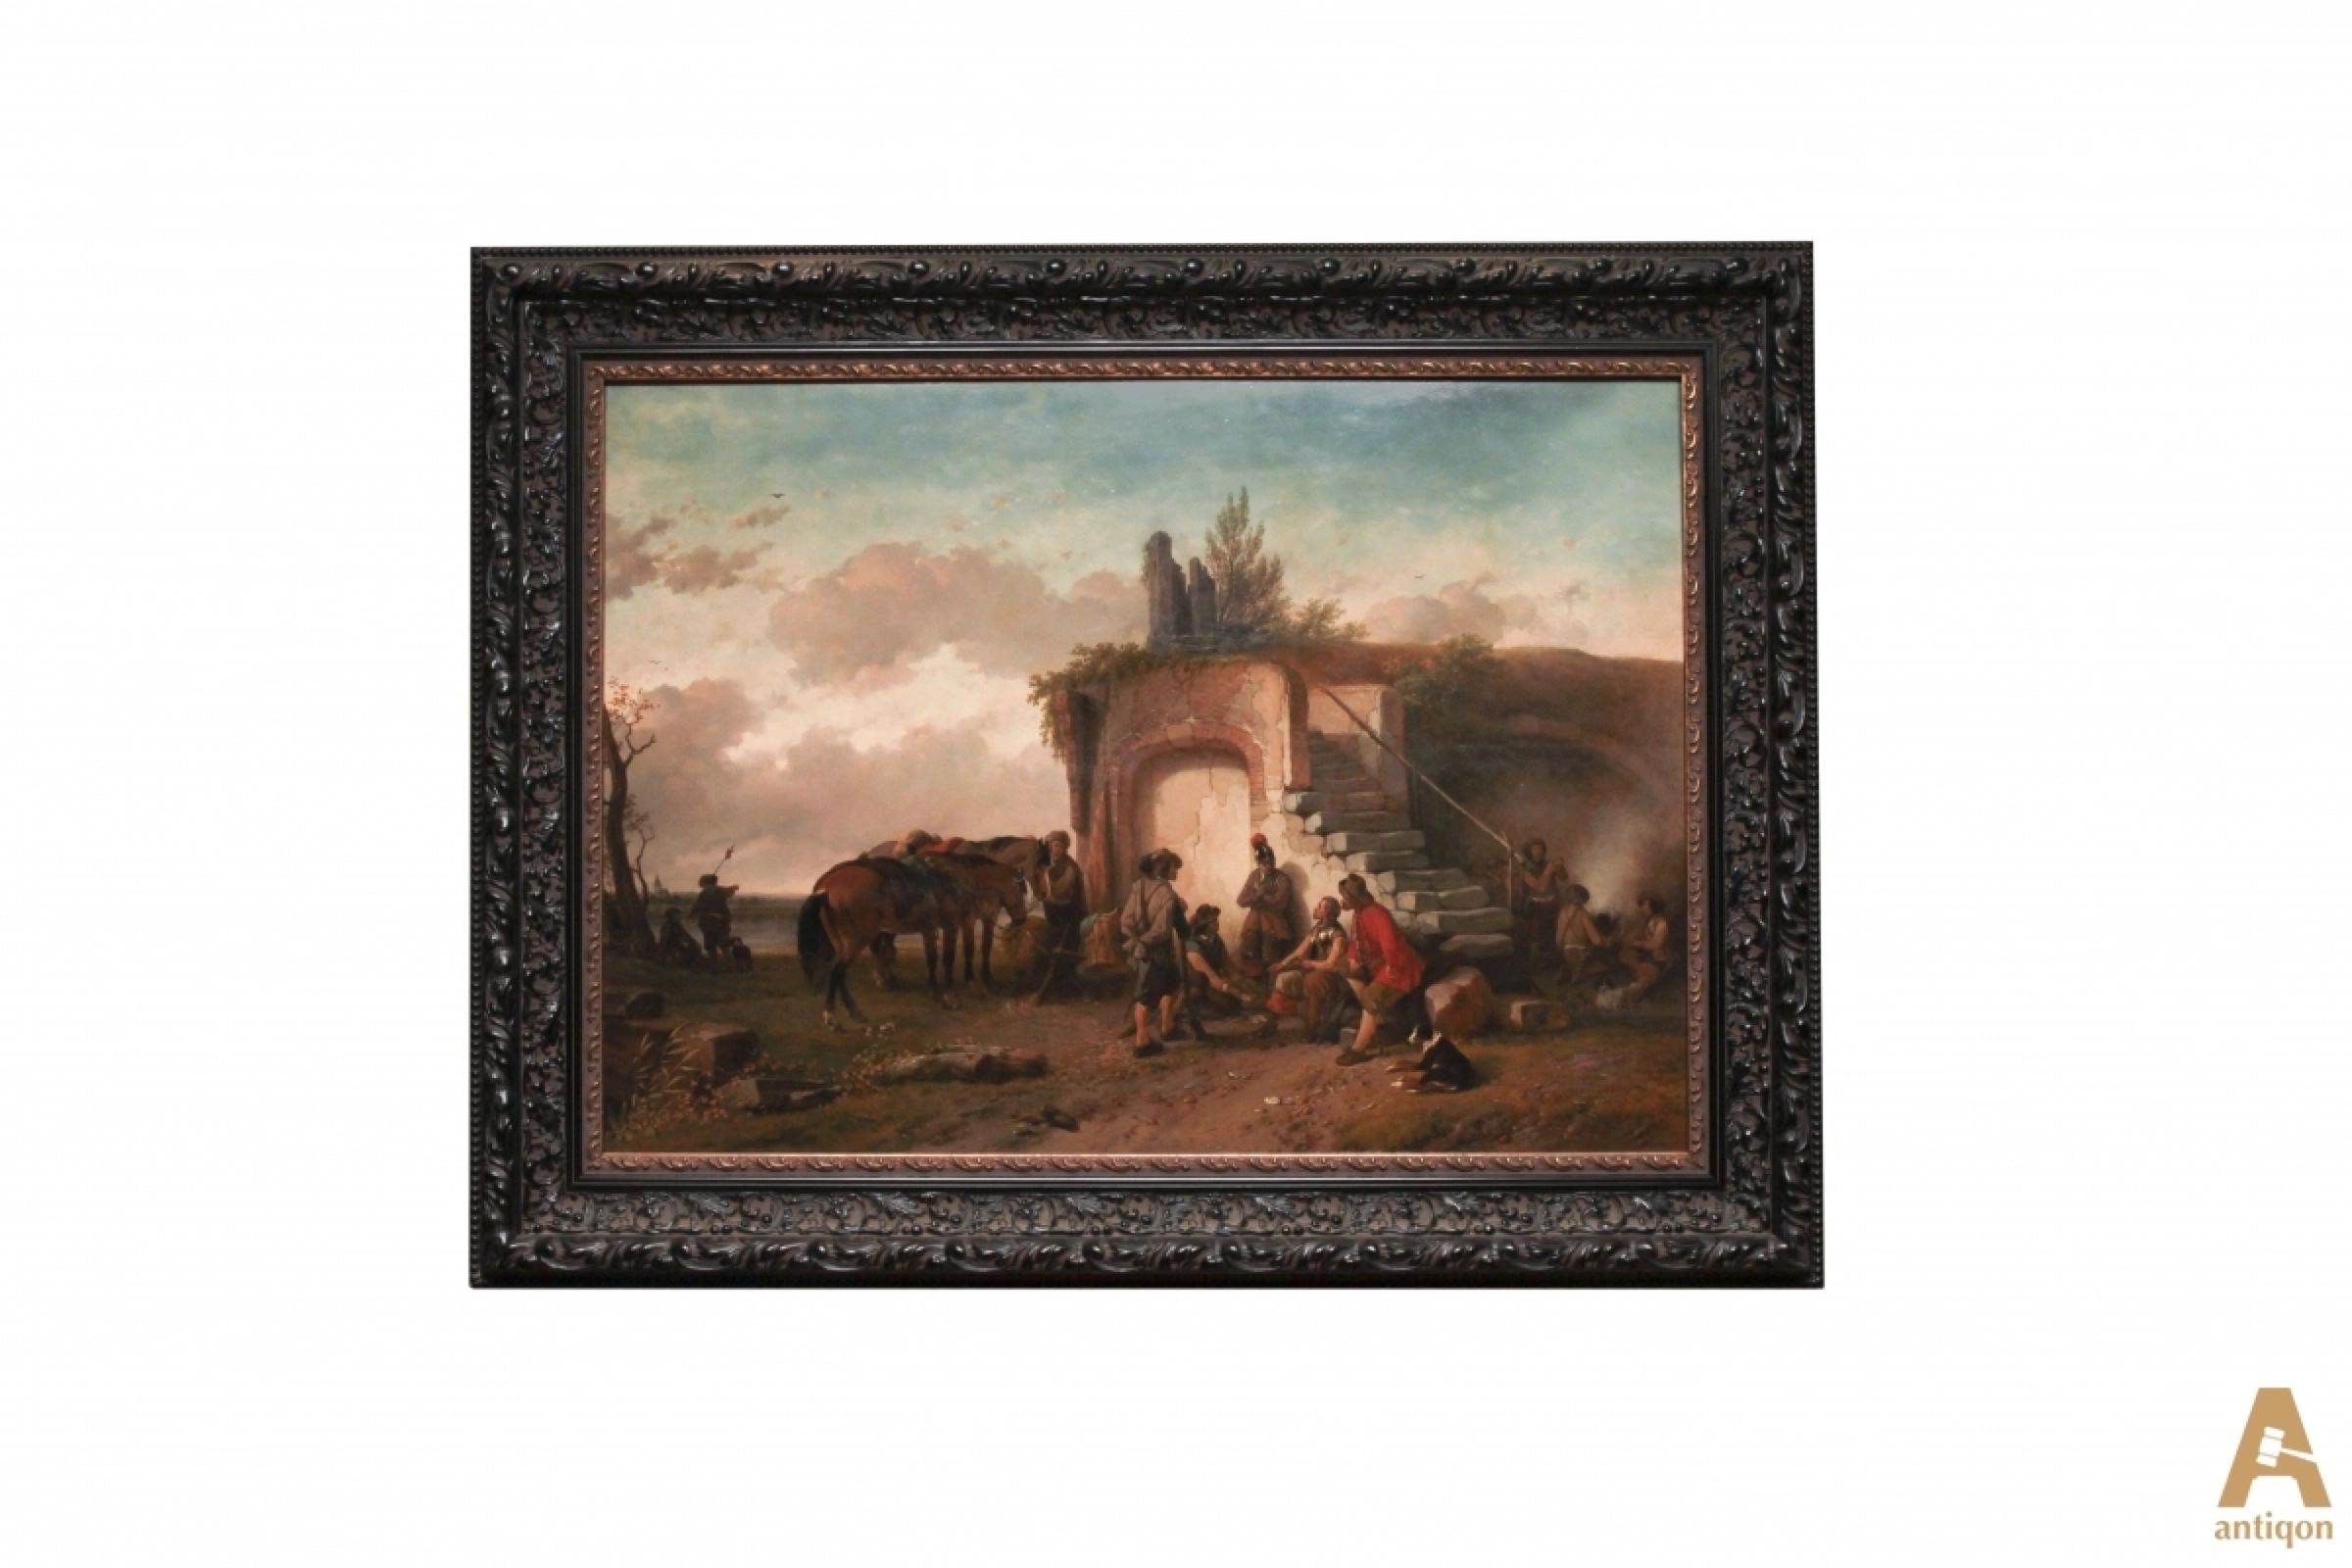 Picture-Arrêt-de-la-cavalerie-Joseph-Jodocus-Moerenhout-1801-1875-